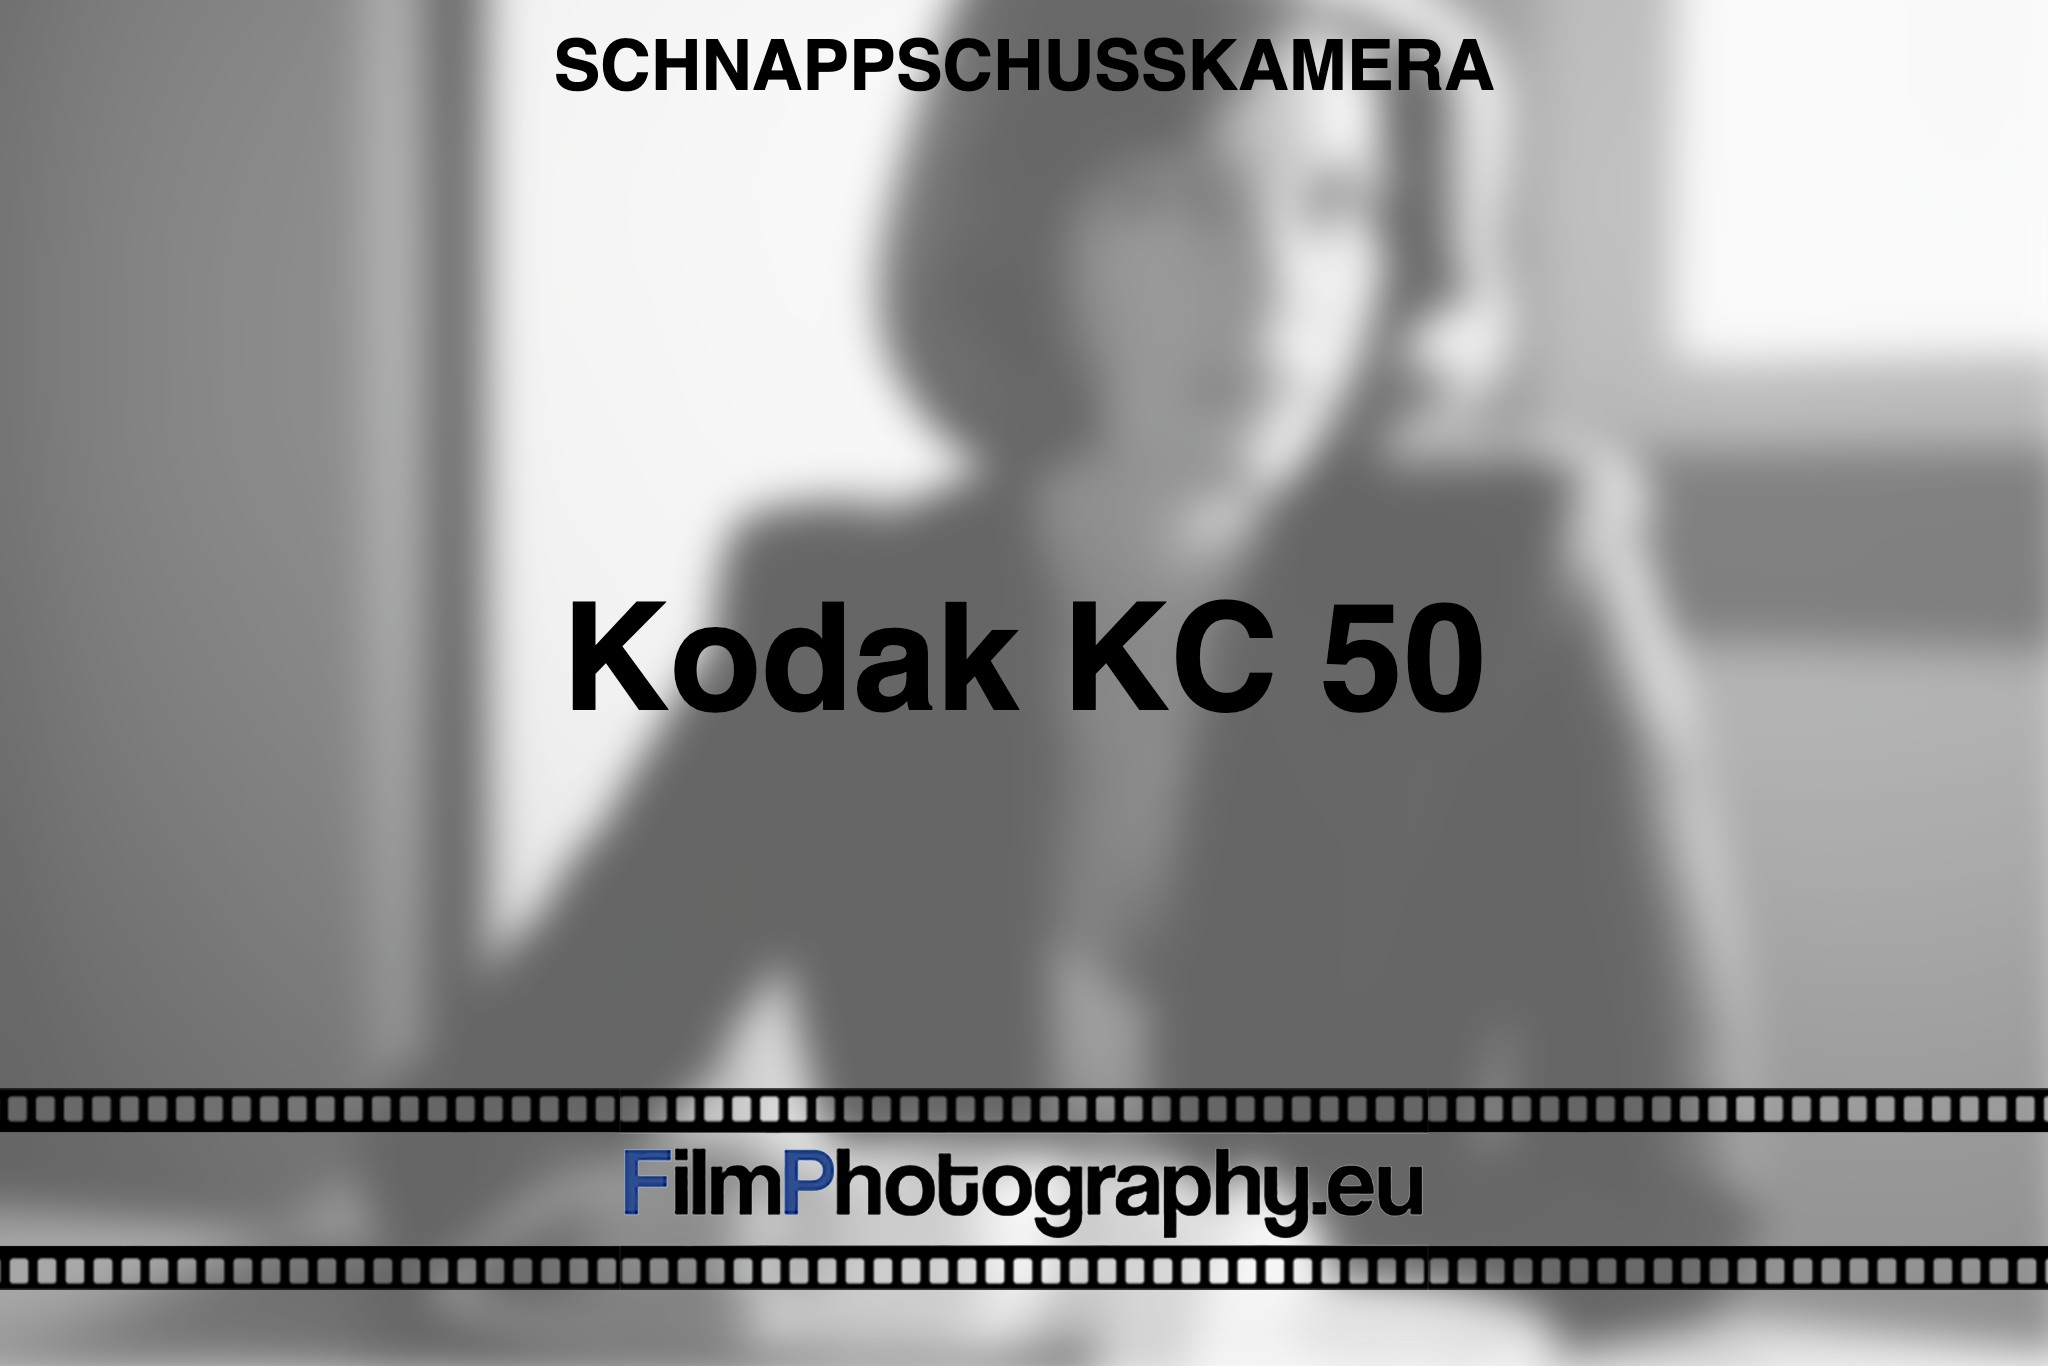 kodak-kc-50-schnappschusskamera-bnv